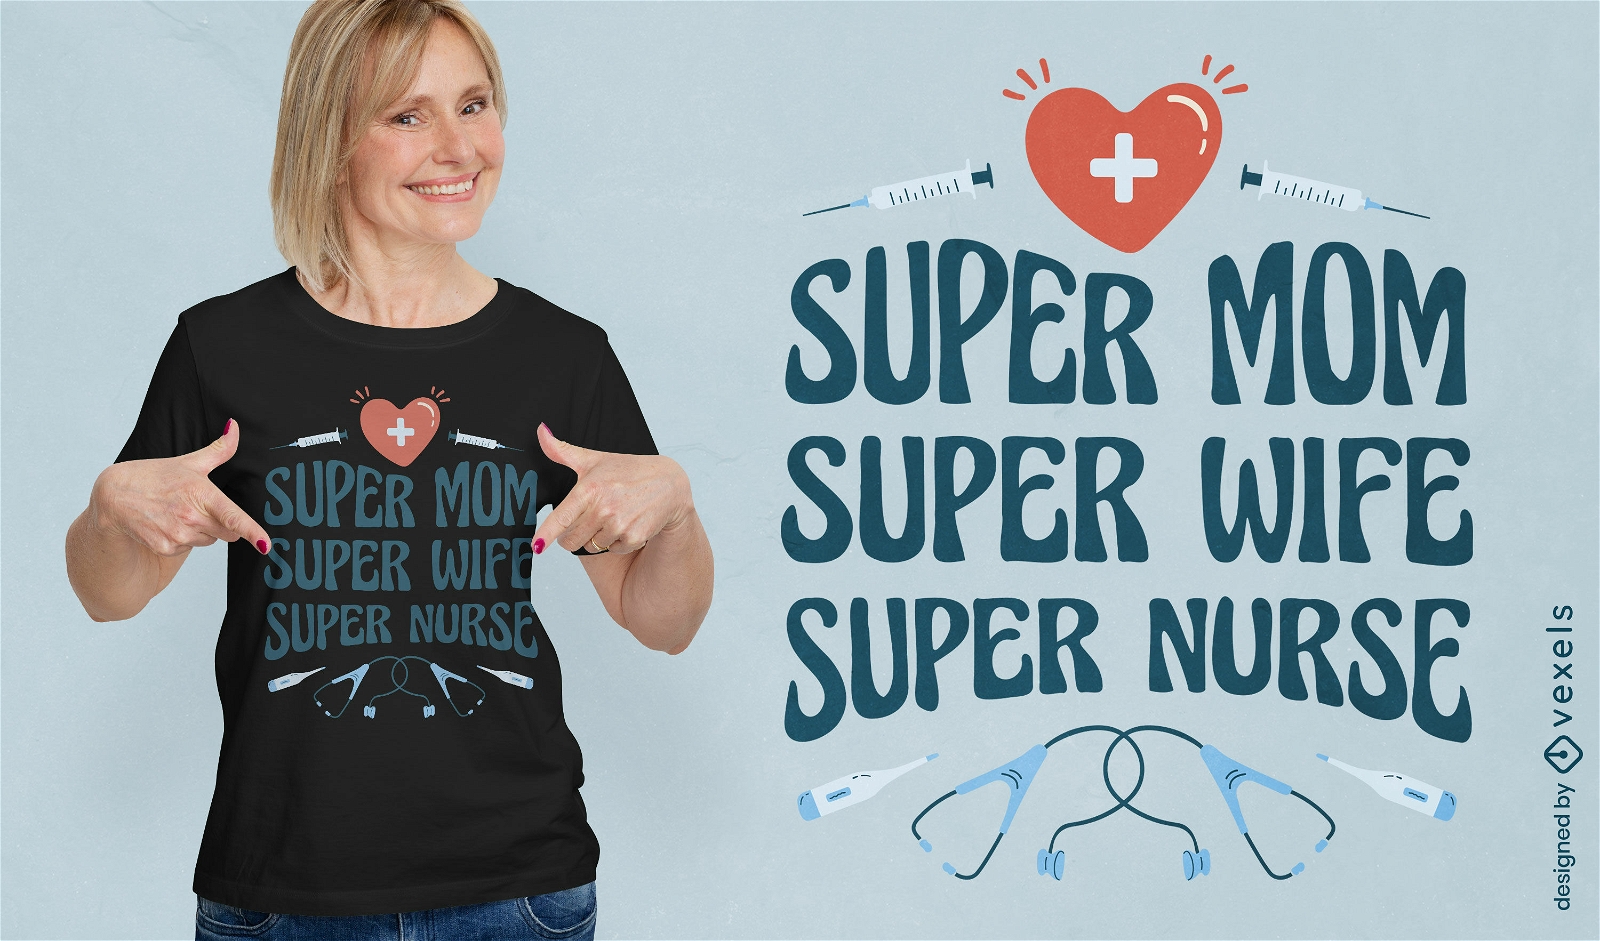 Super nurse quote t-shirt design